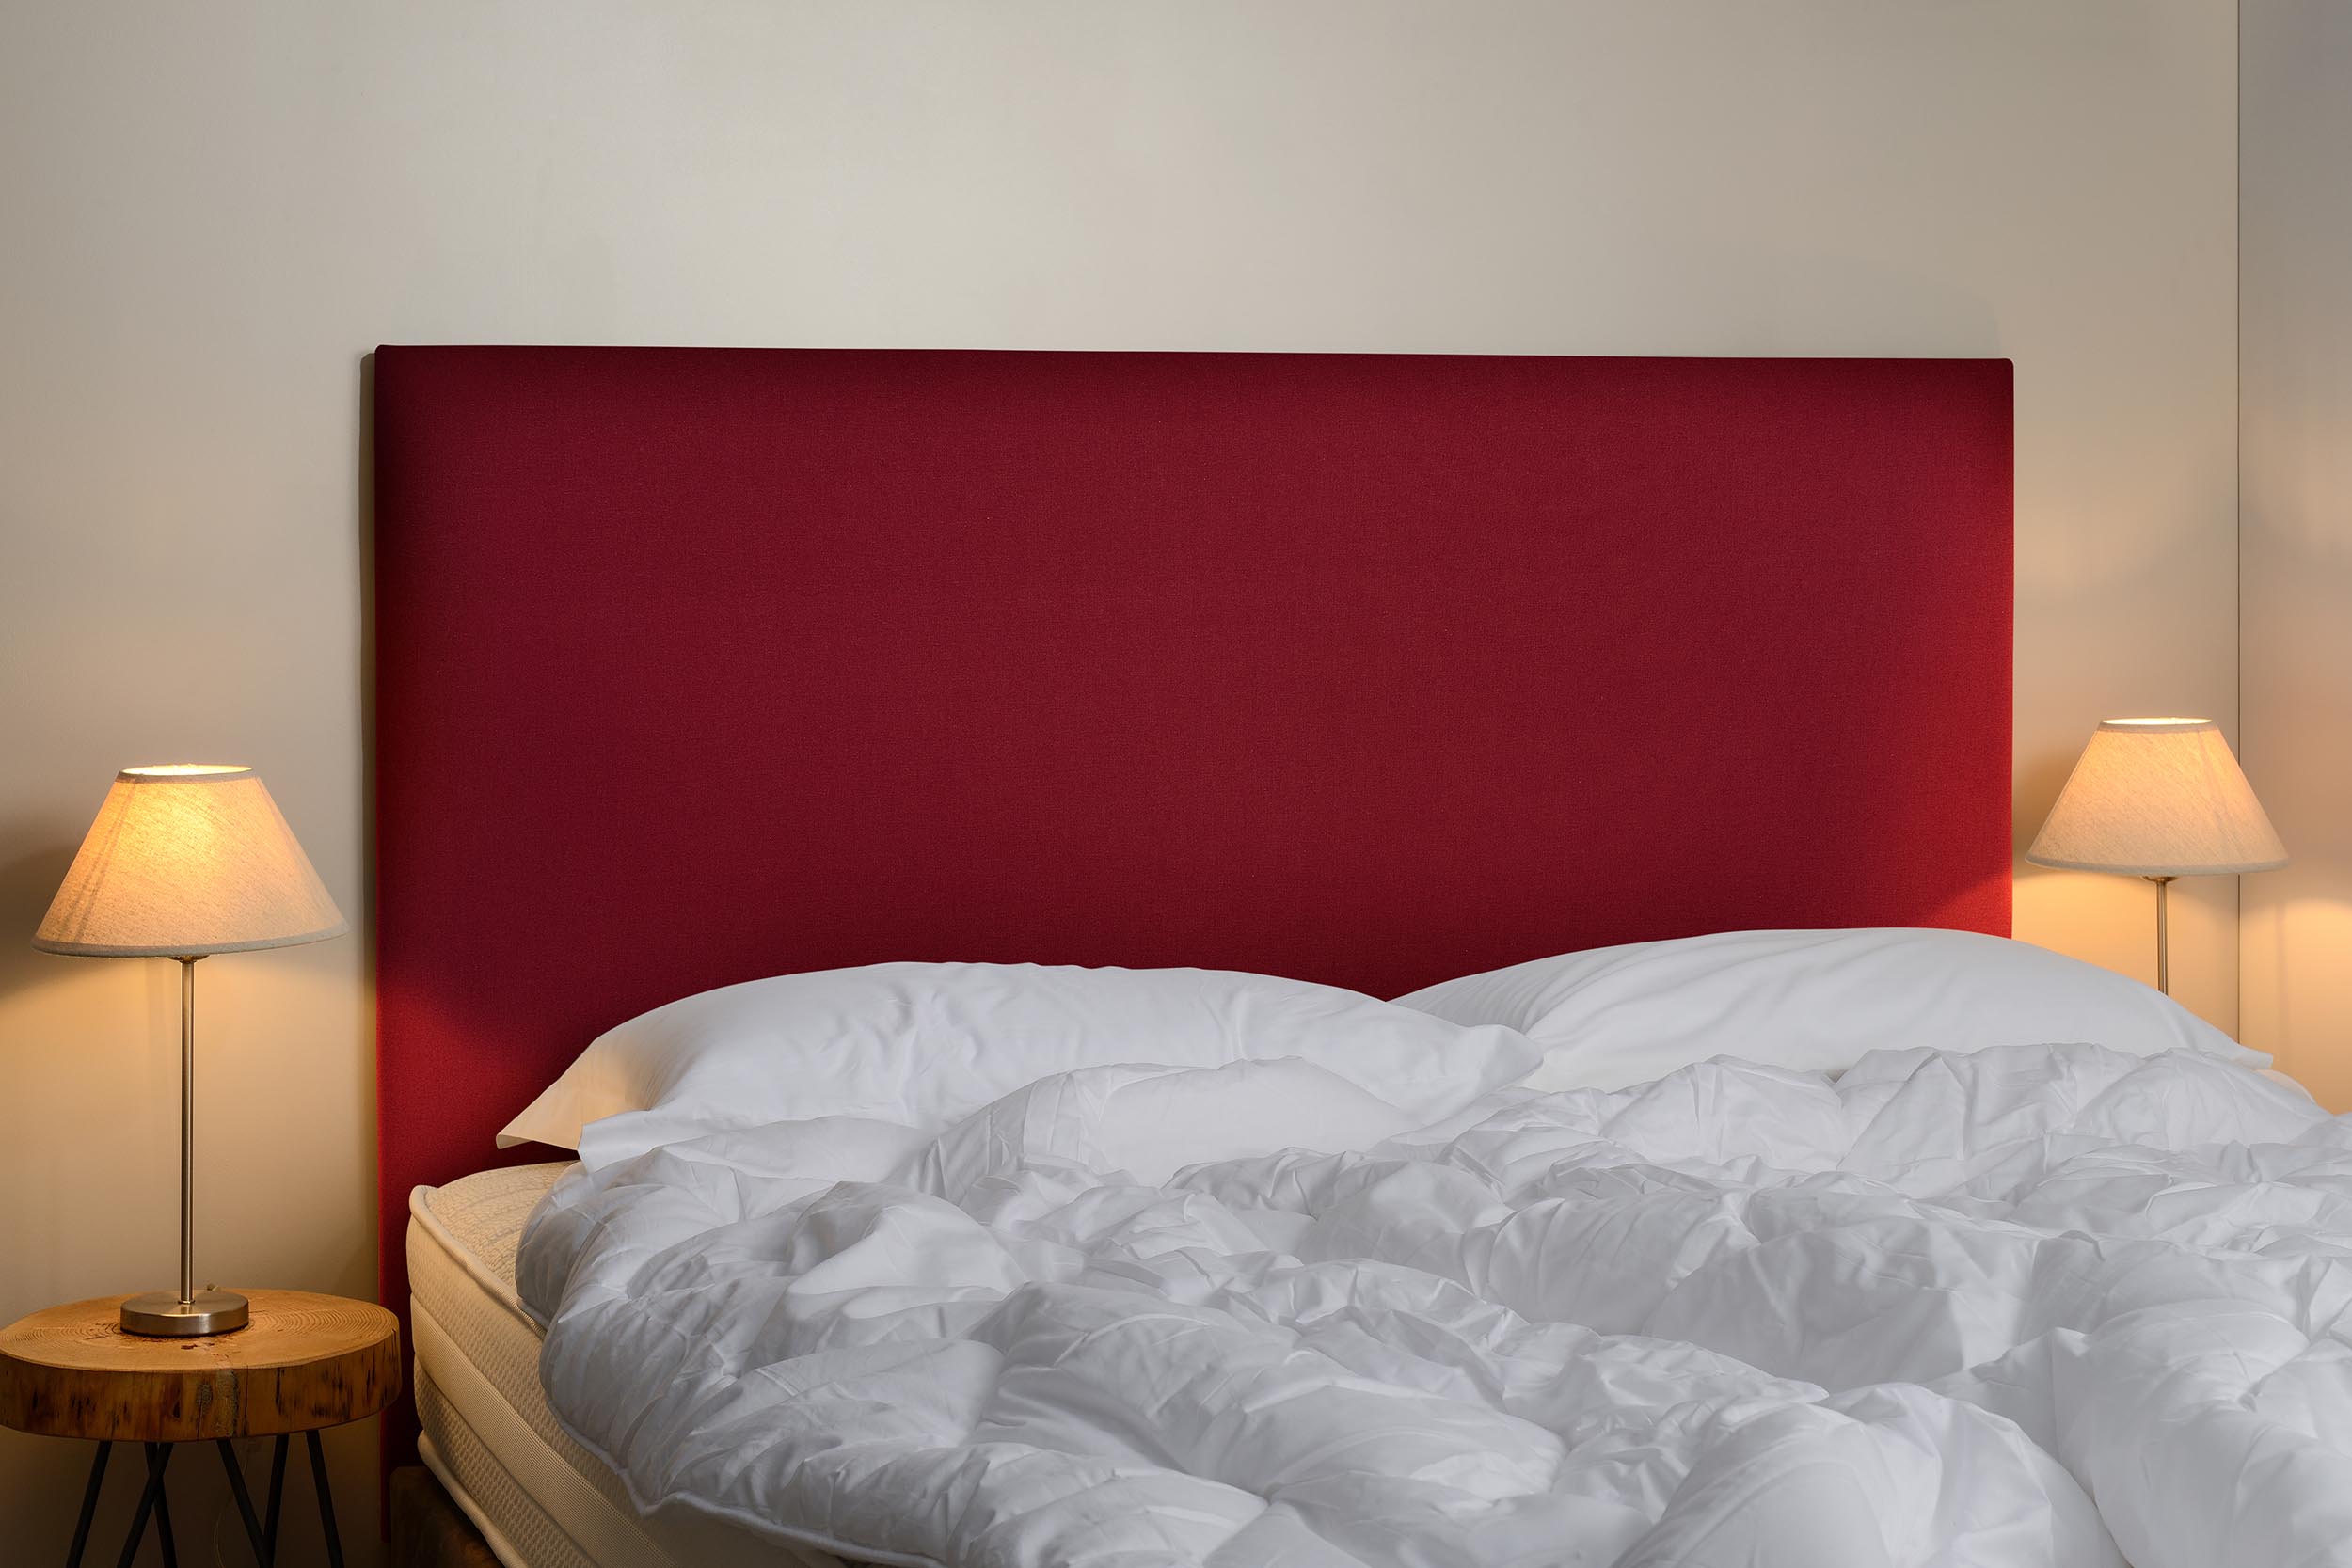 Tete de lit rectangle rouge